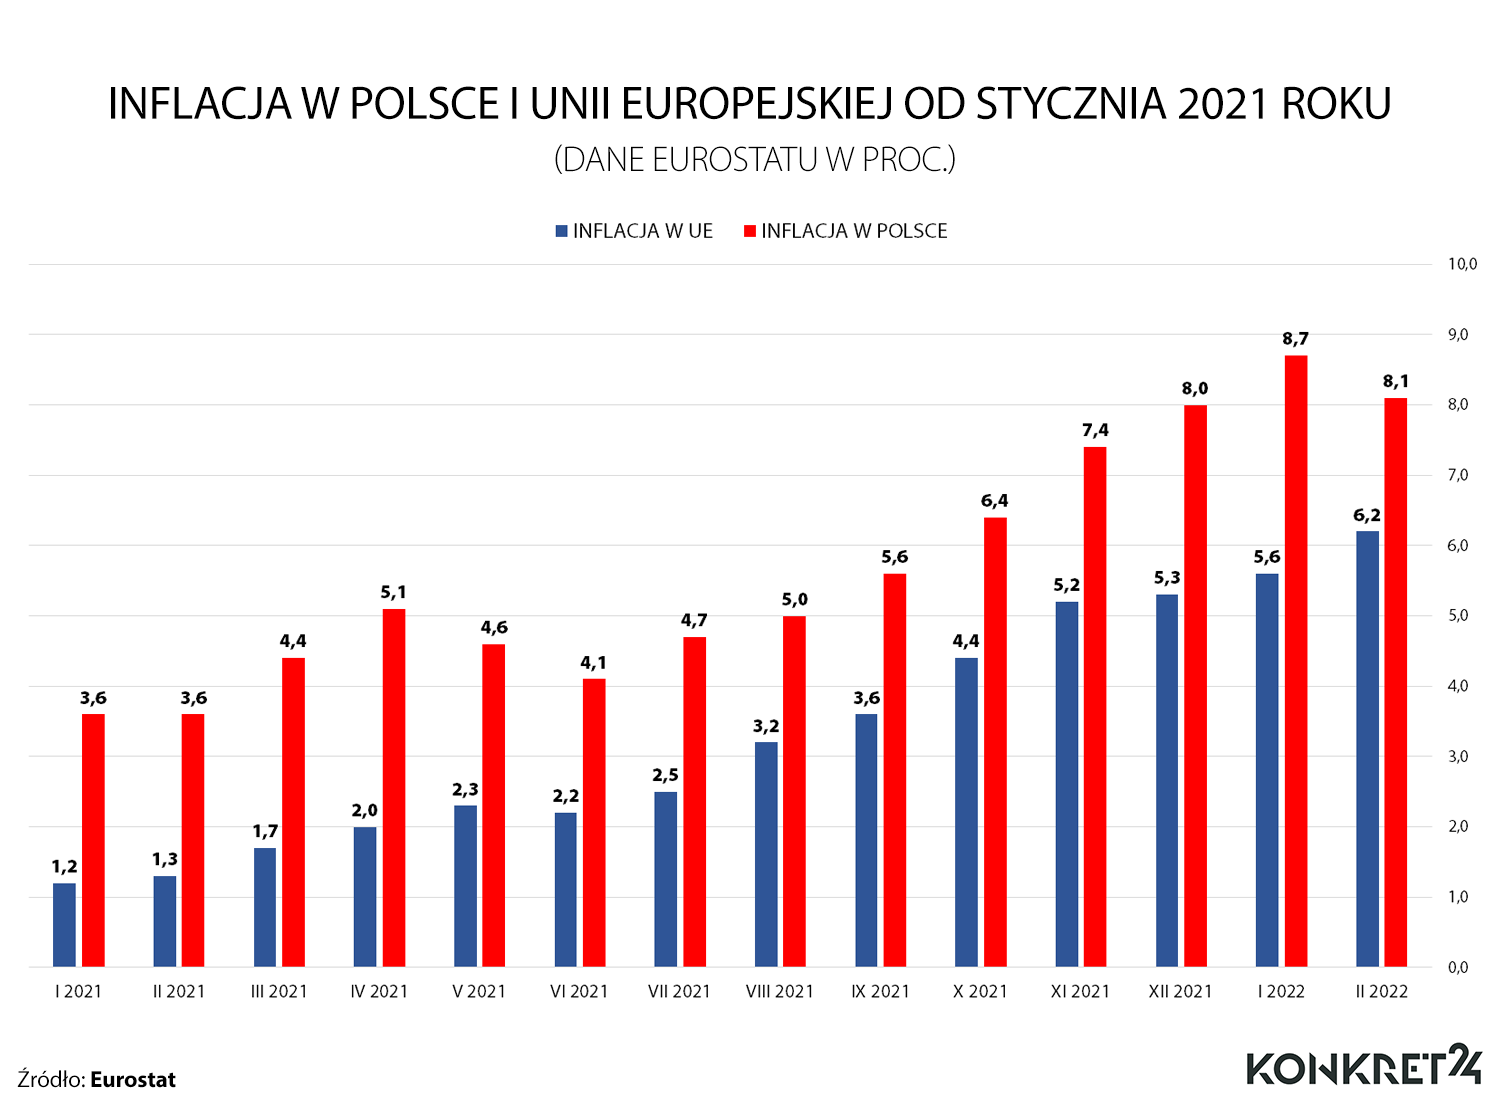 Inflacja w Polsce i Unii Europejskiej wg danych Eurostatu 